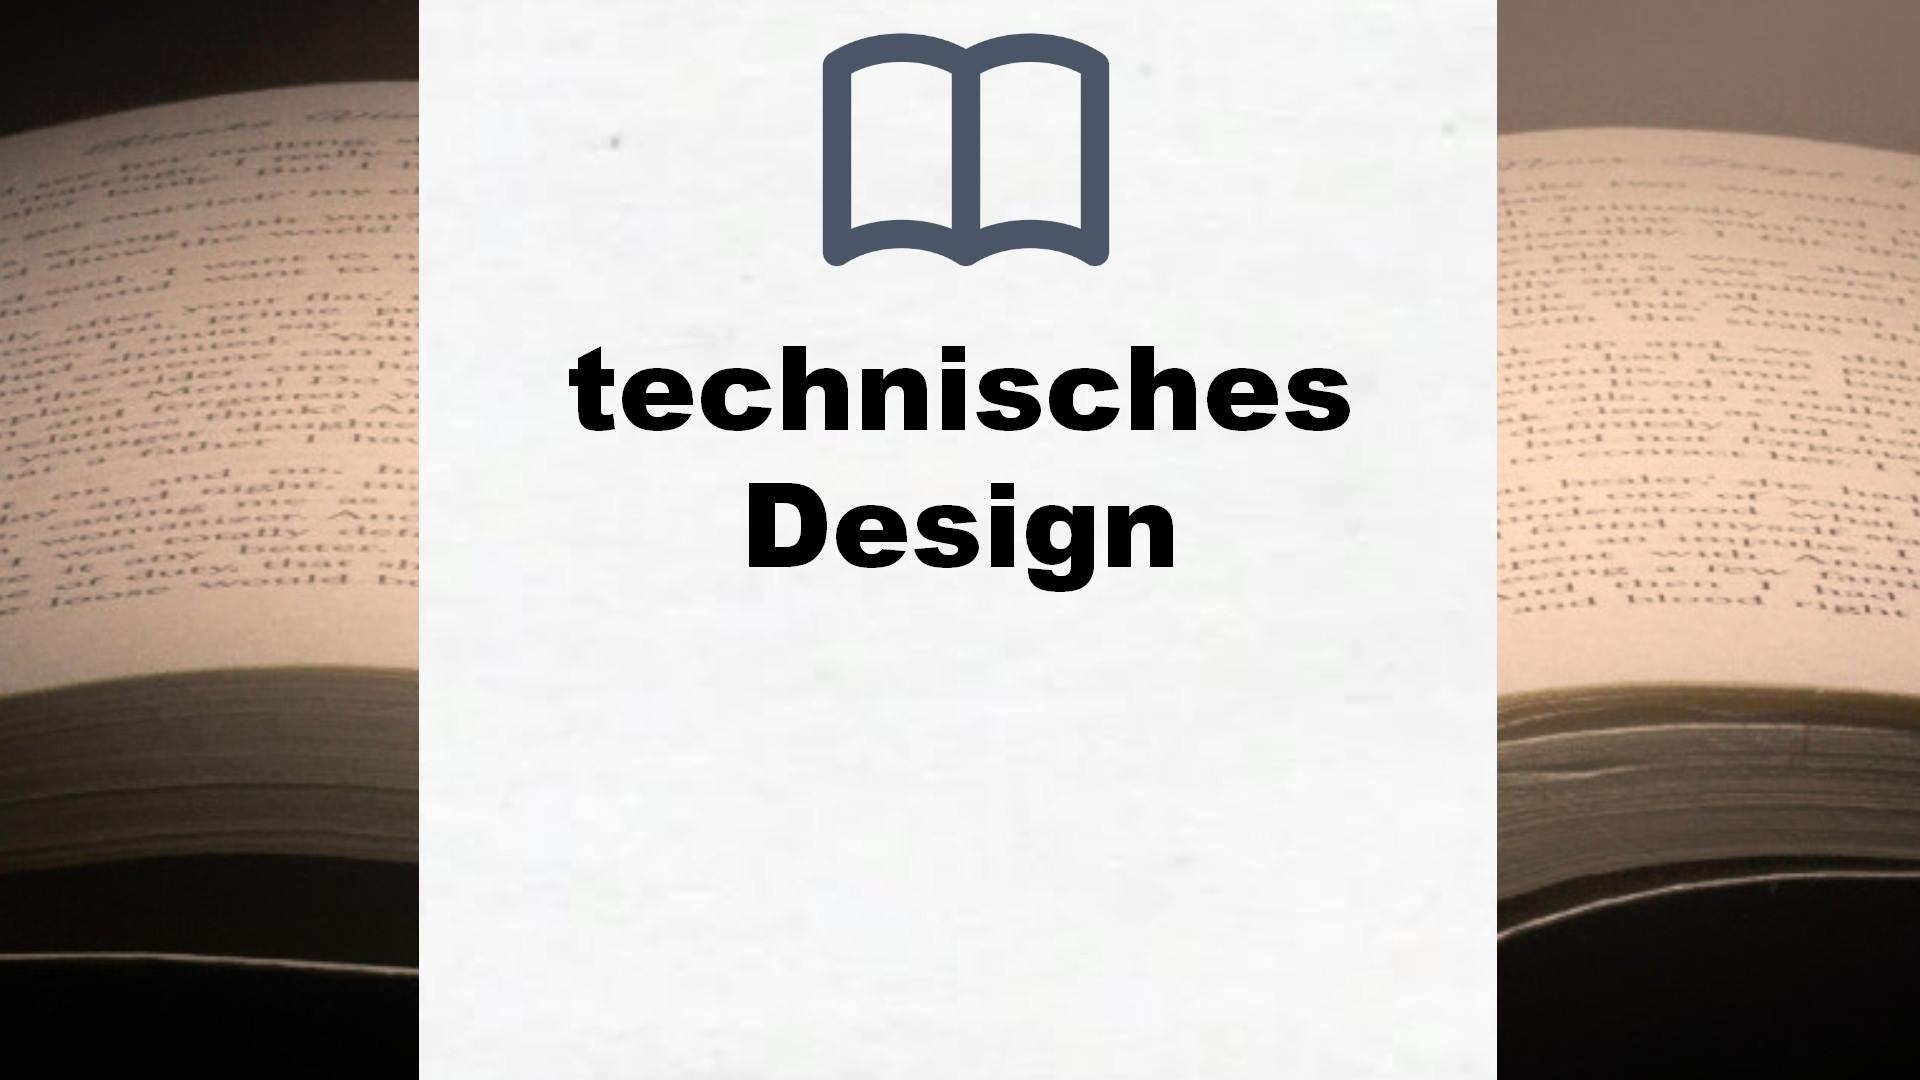 Bücher über technisches Design